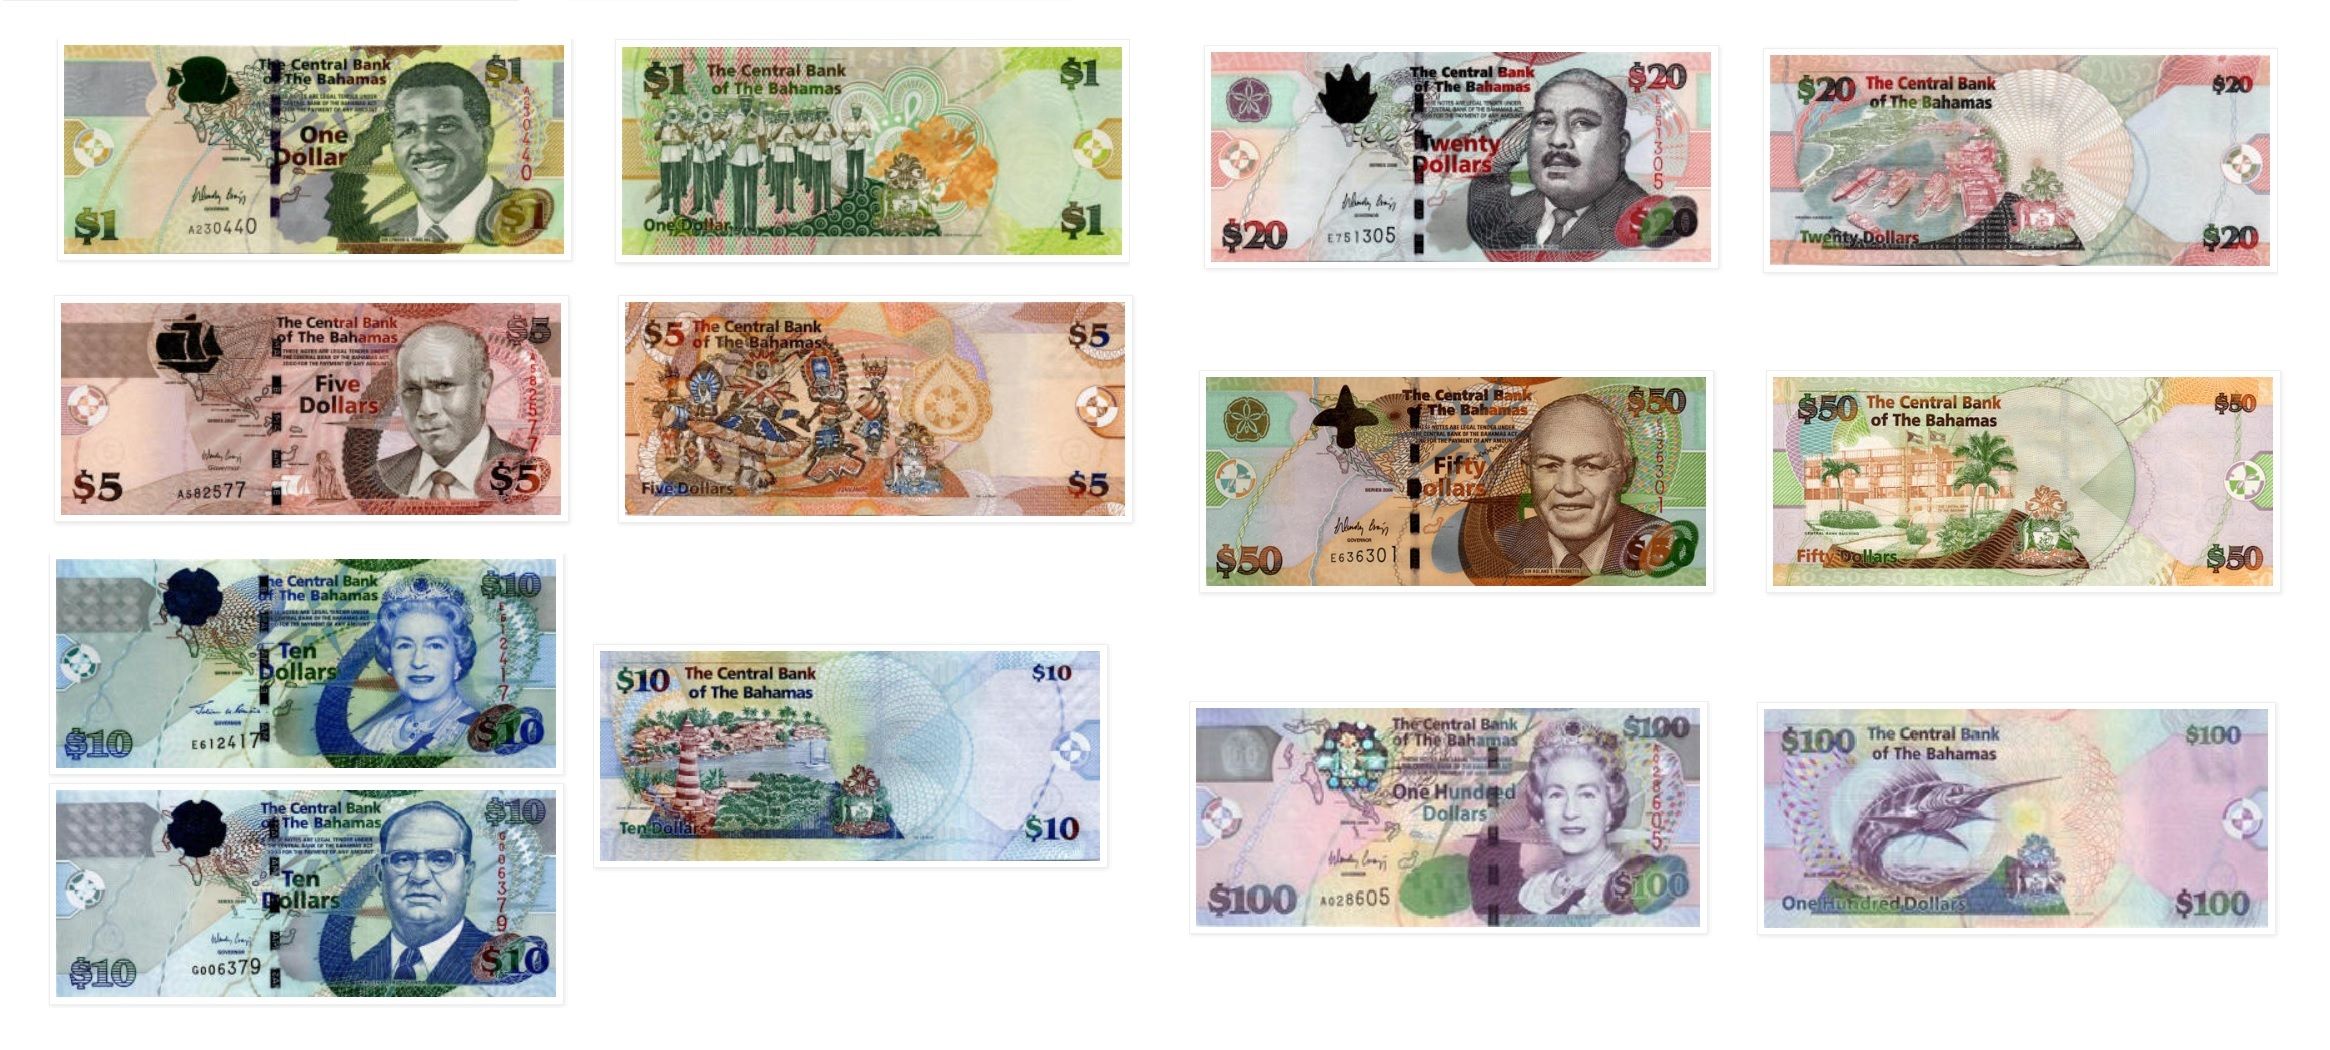 Bahamian money photo